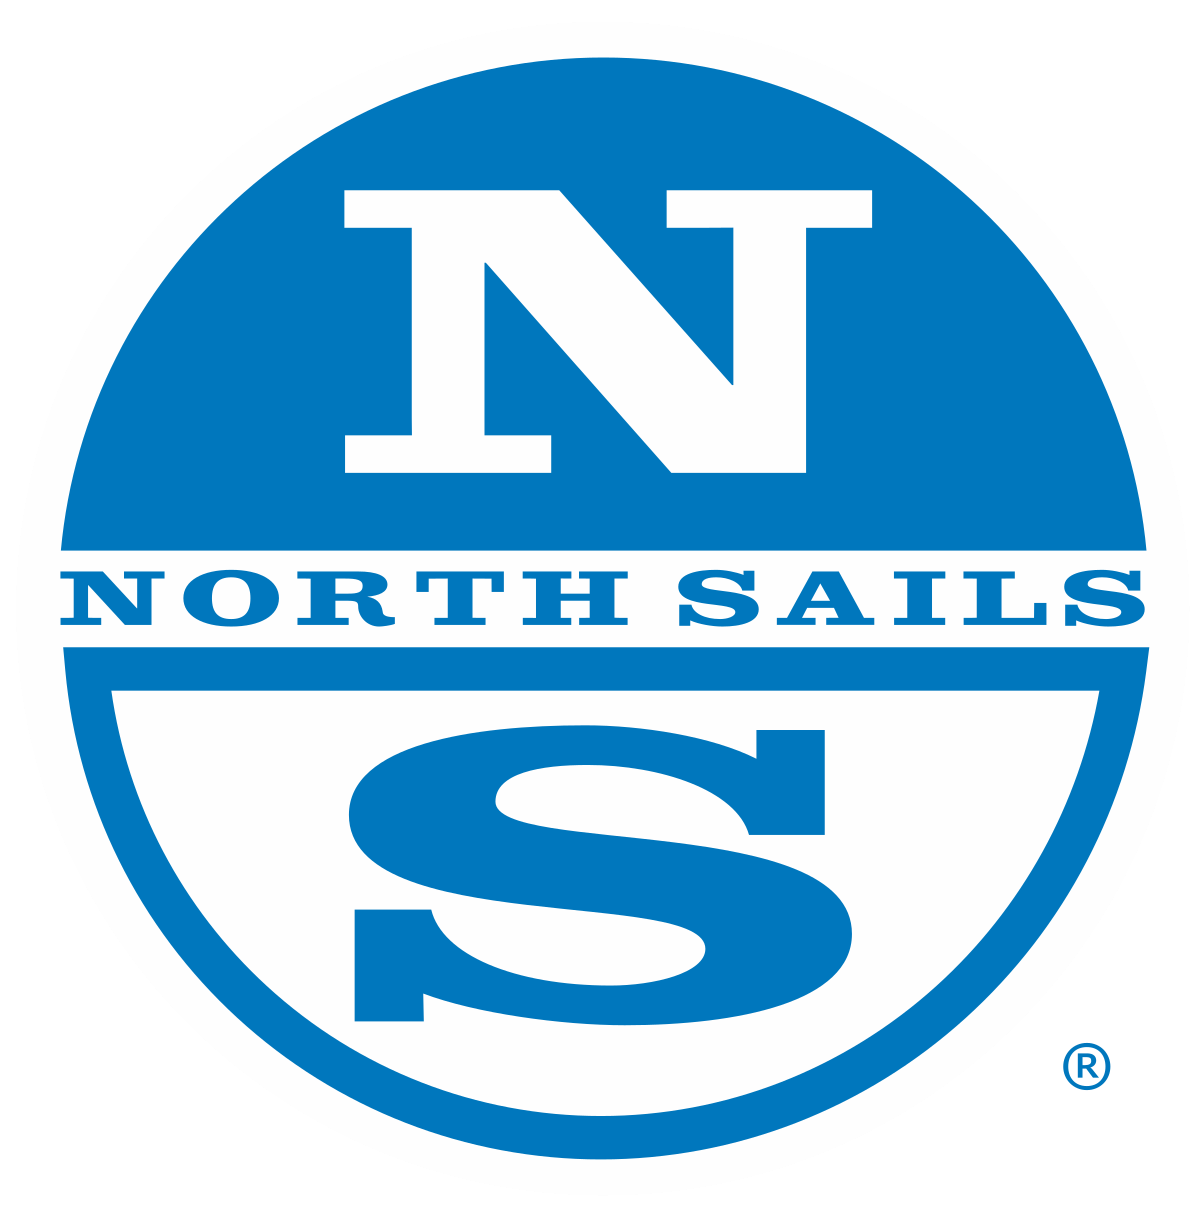 North Sails Wikipedia